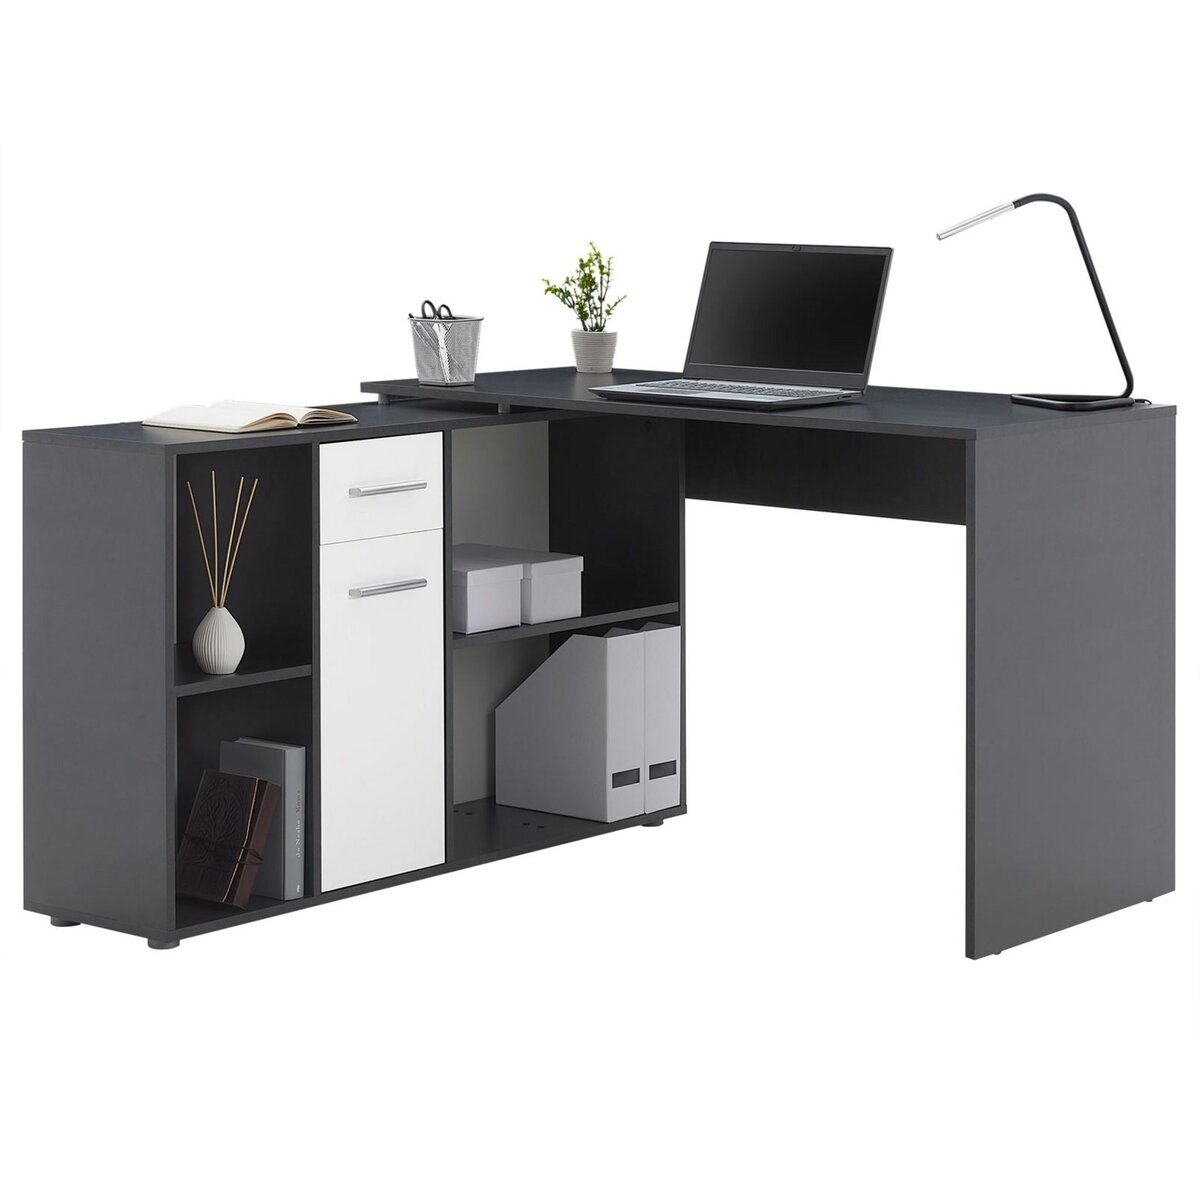 IDIMEX Bureau d'angle CARMEN table avec meuble de rangement